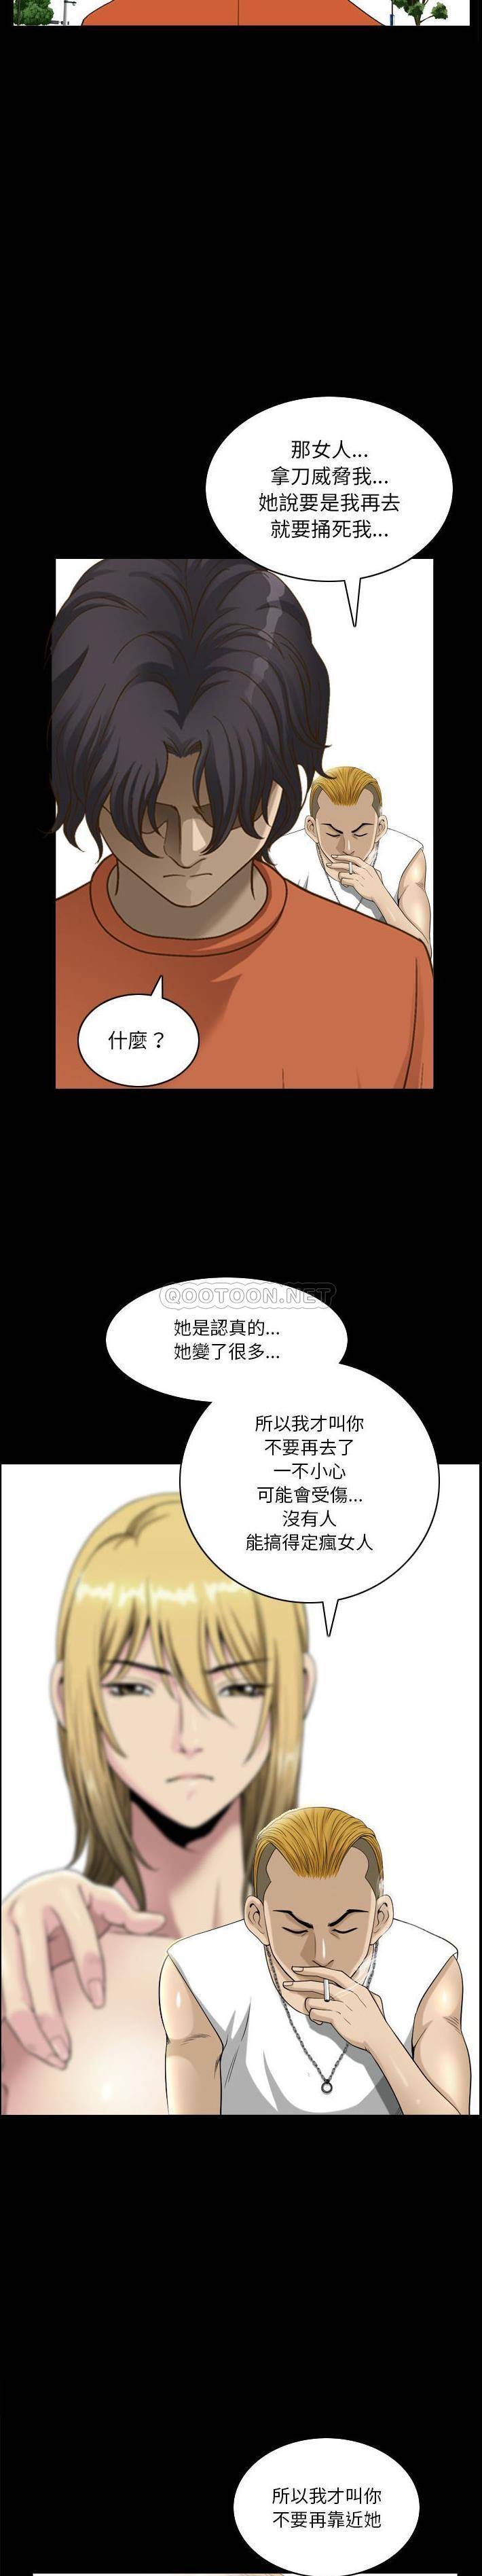 韩国污漫画 墮落的人生 第29话 6